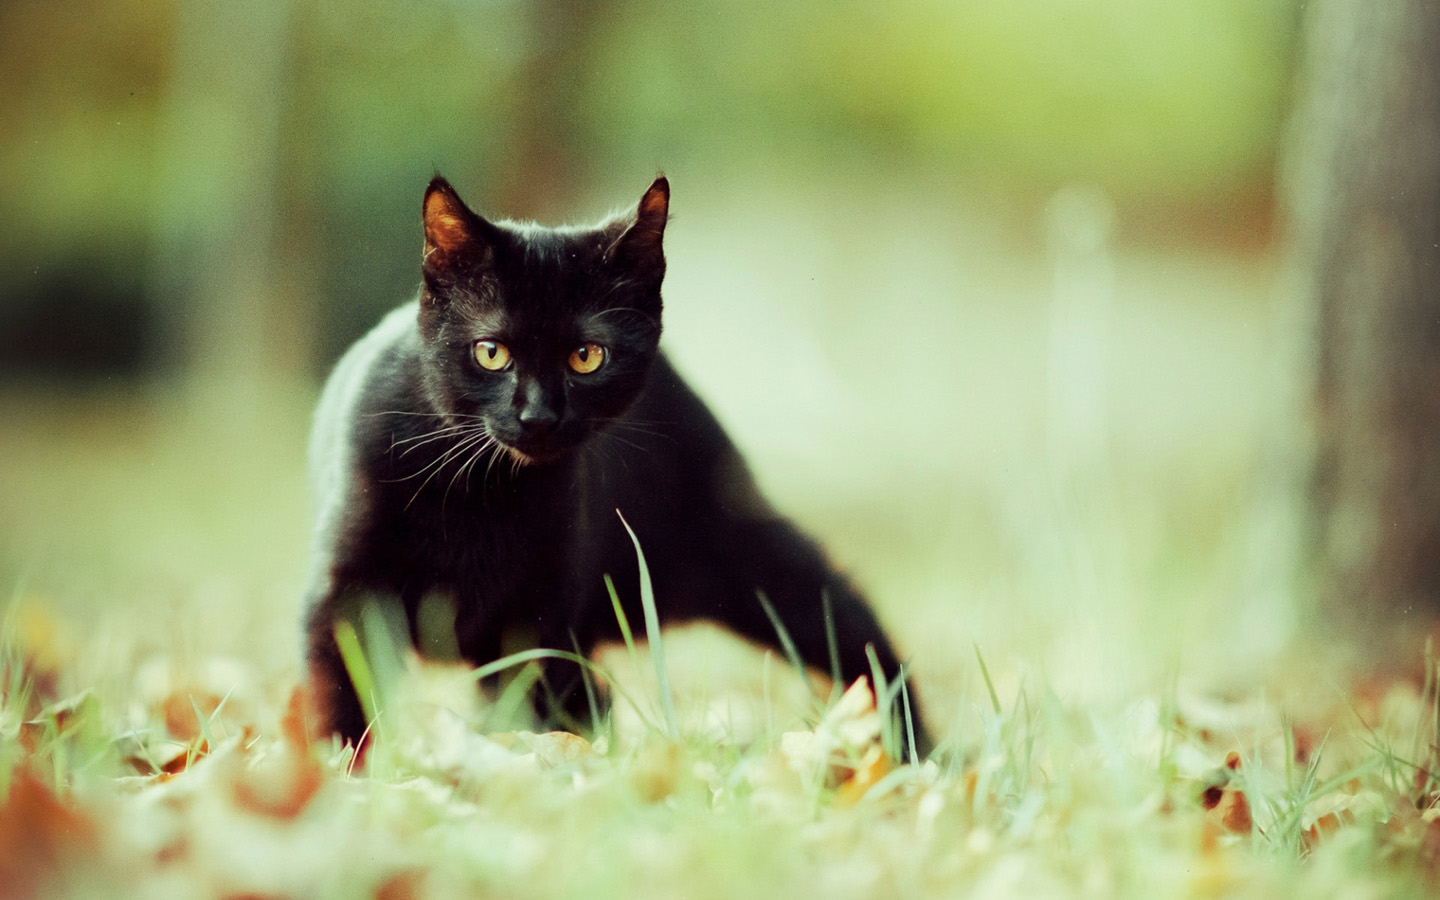  可爱黑猫高清壁纸 